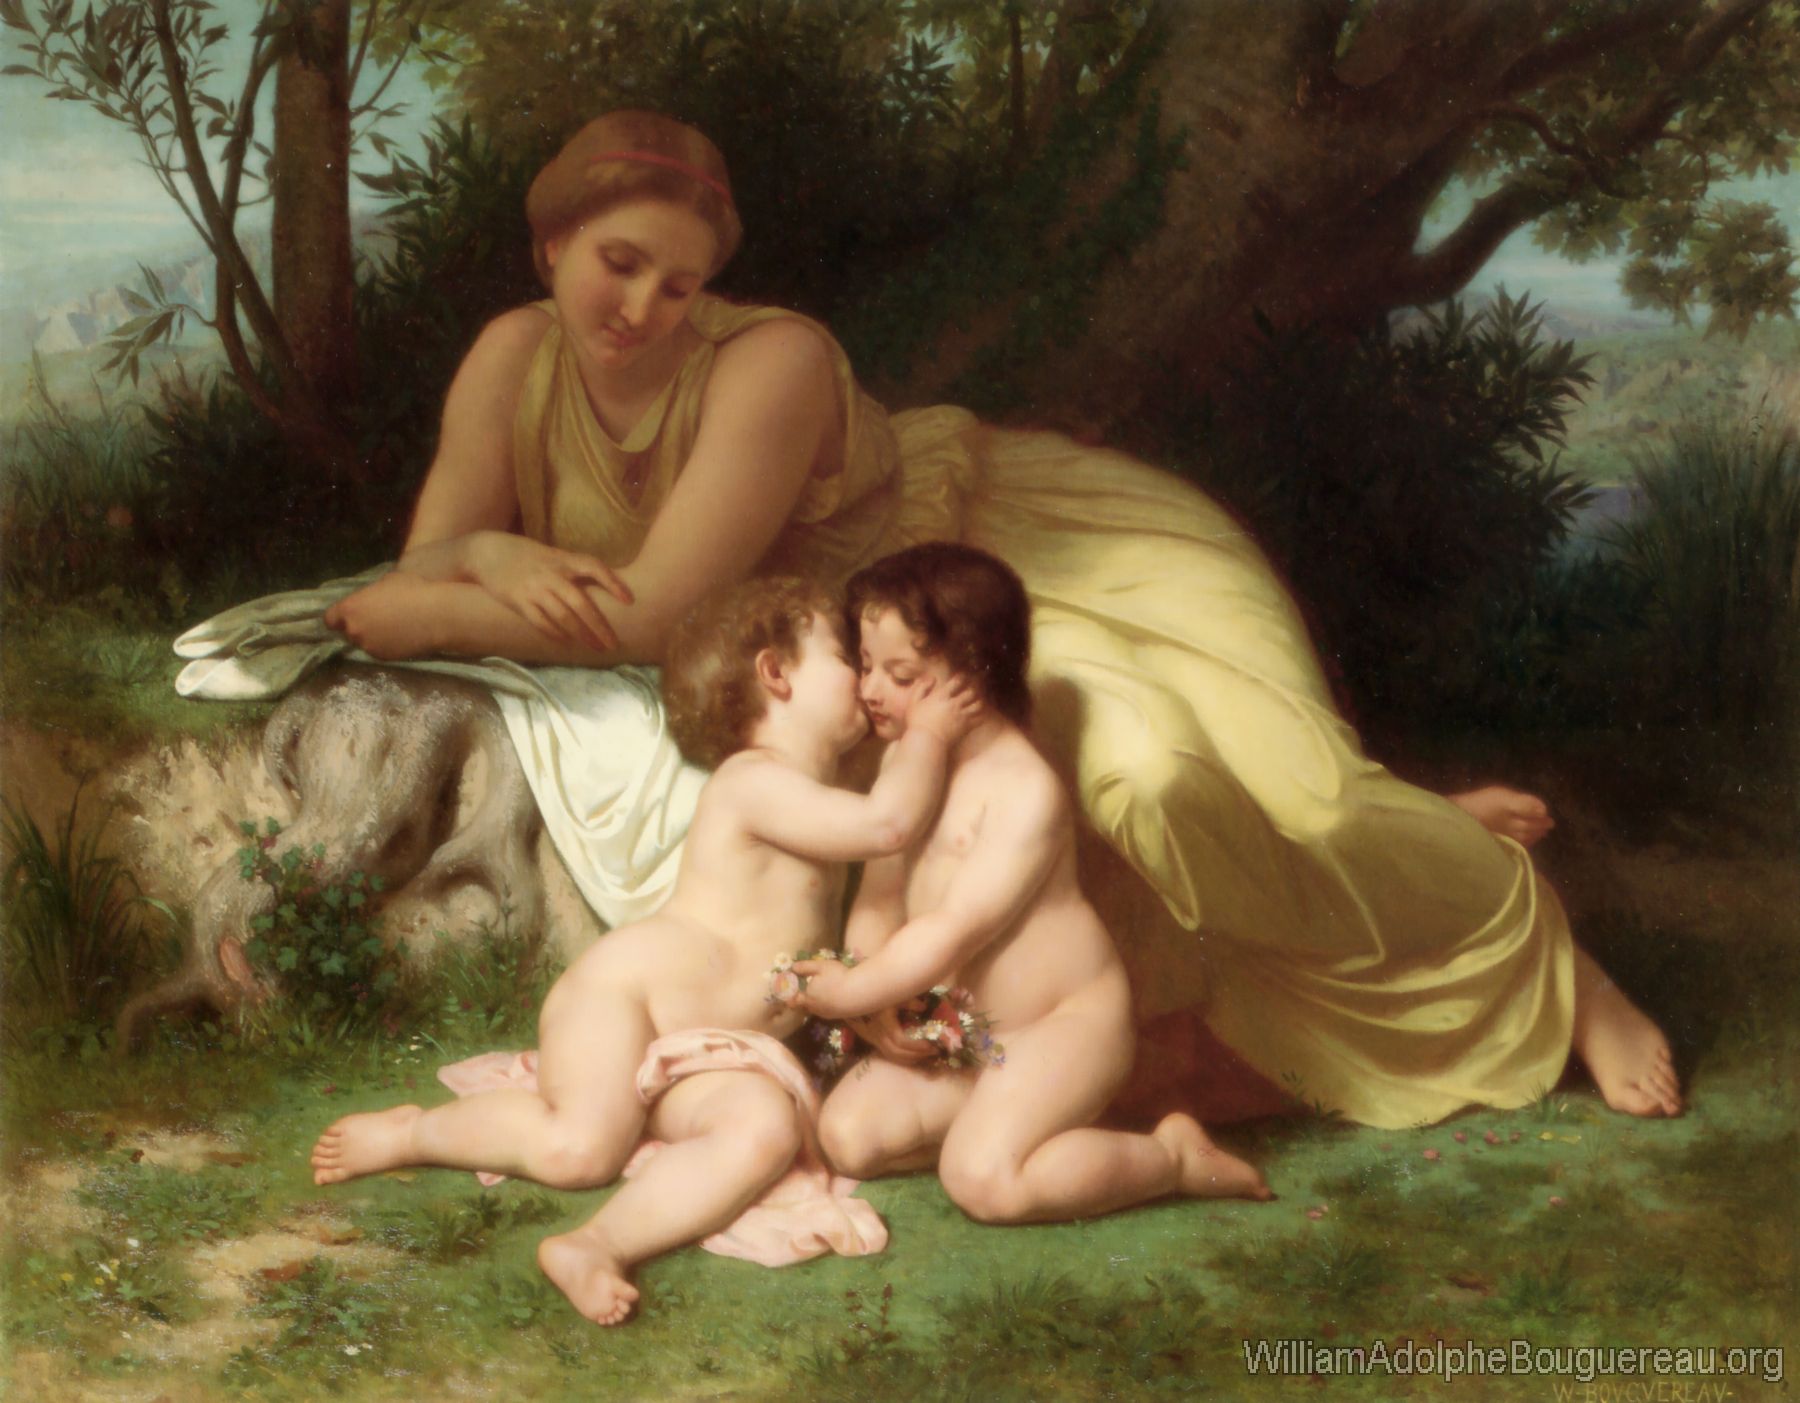 Jeune femme contemplant deux enfants qui s'embrassent , Young woman contemplating two embracing children